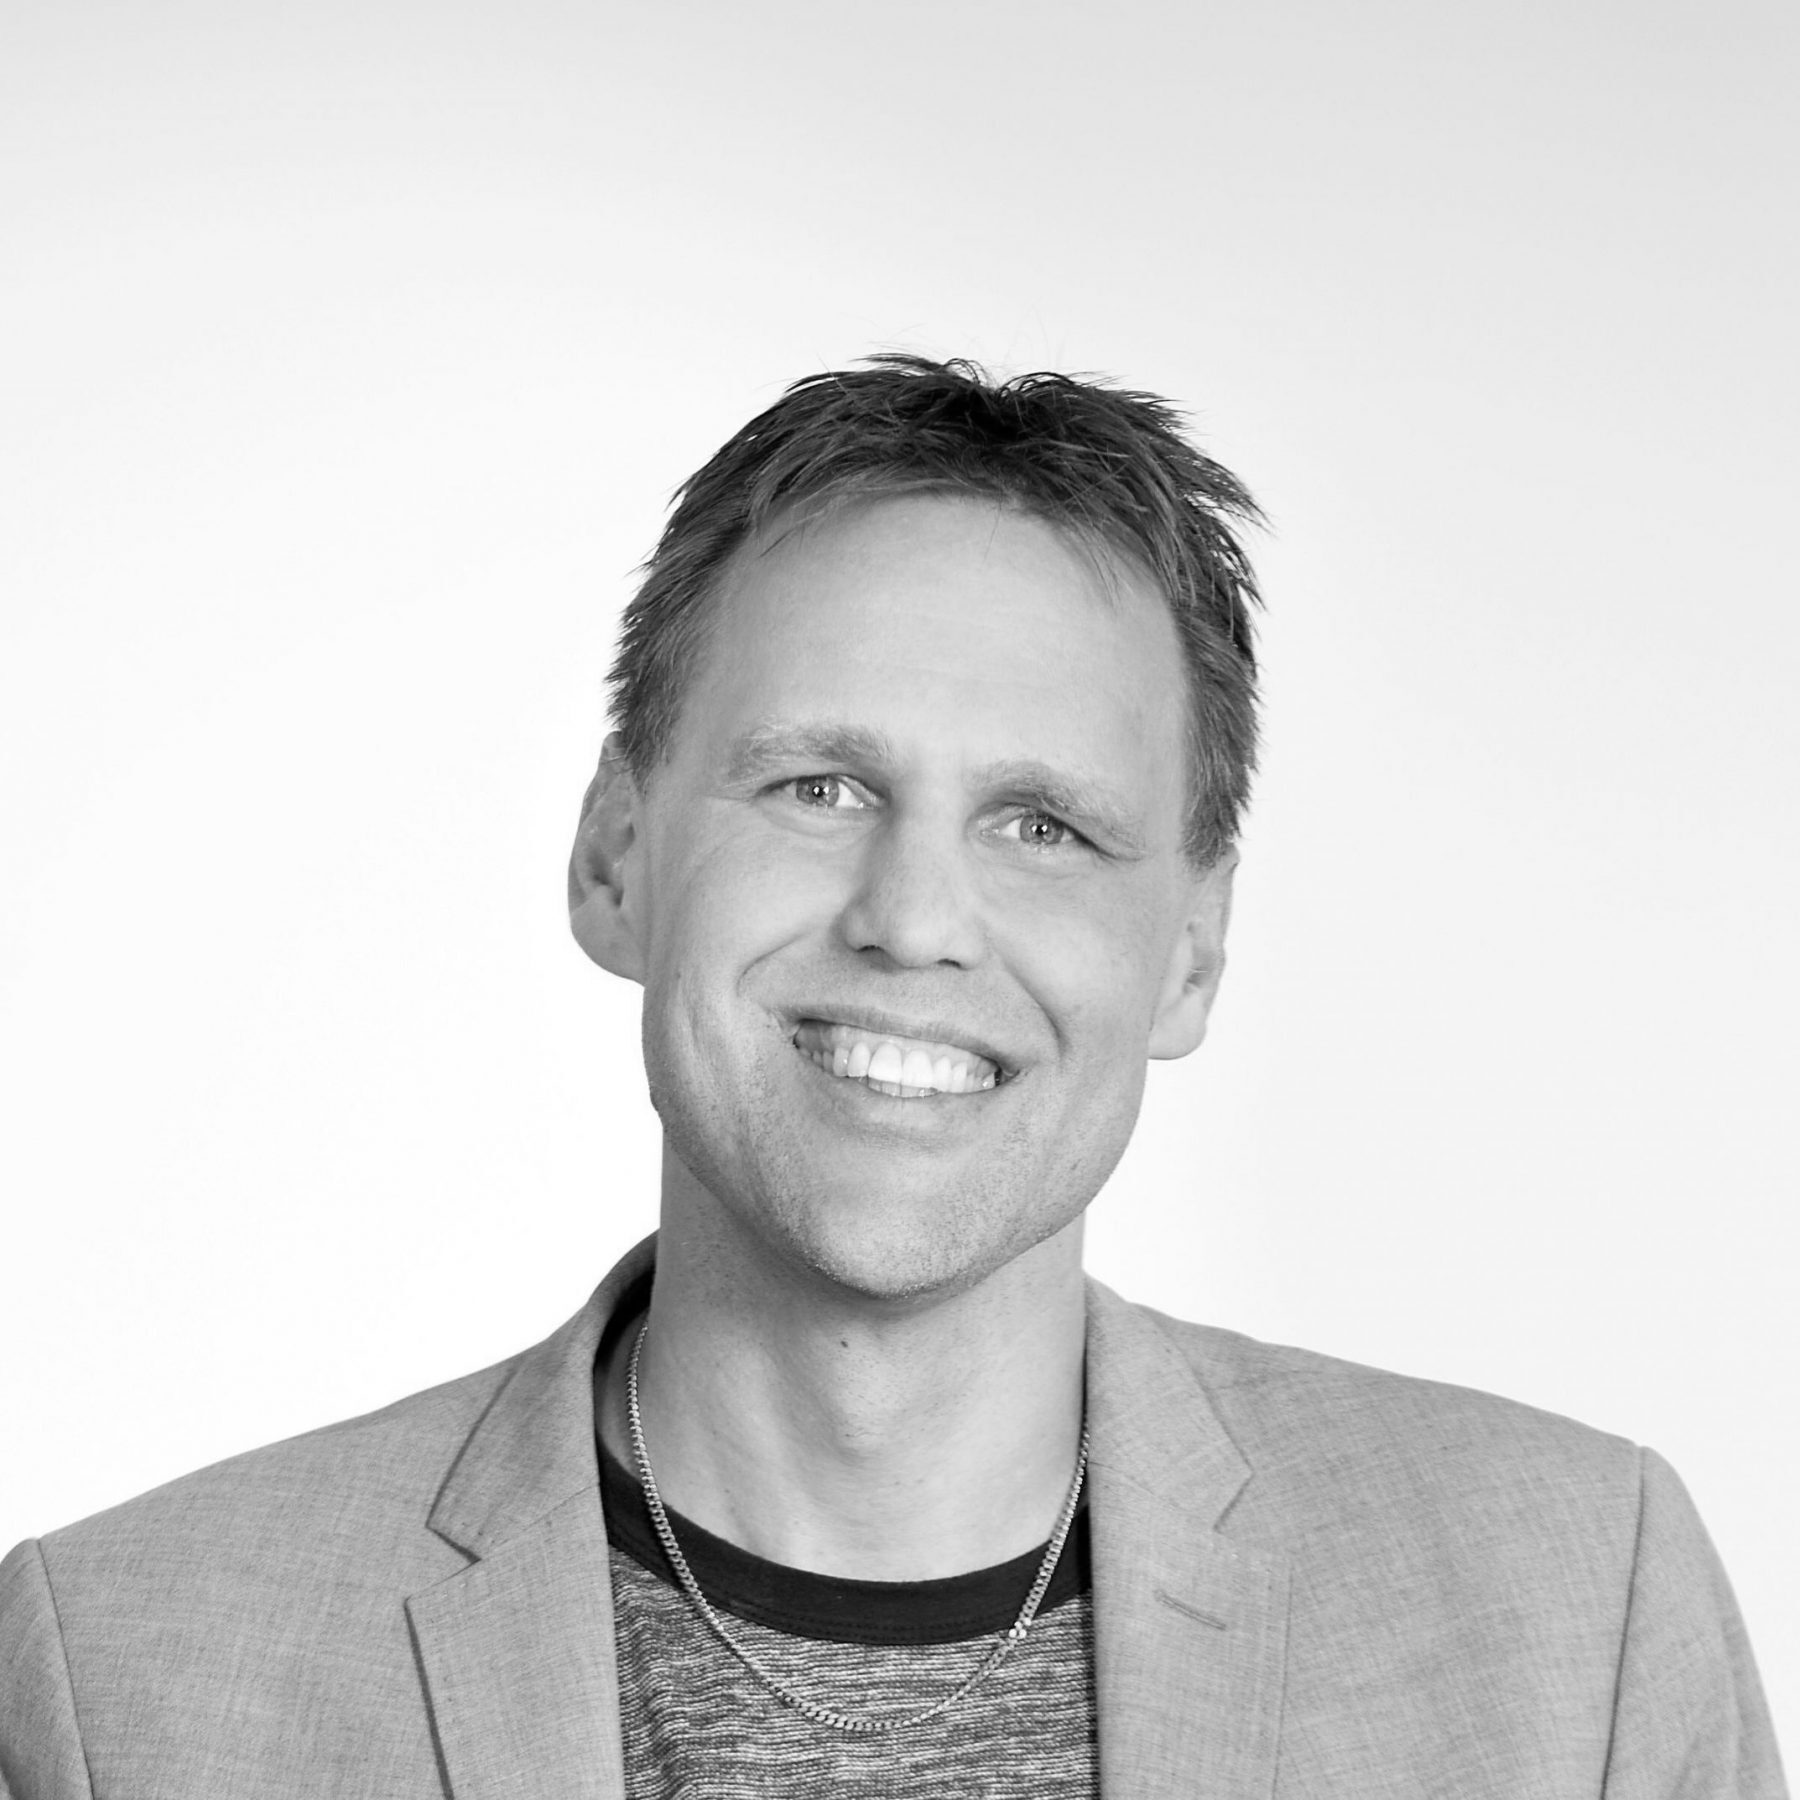 WirelessCar's CEO, Niklas Florén